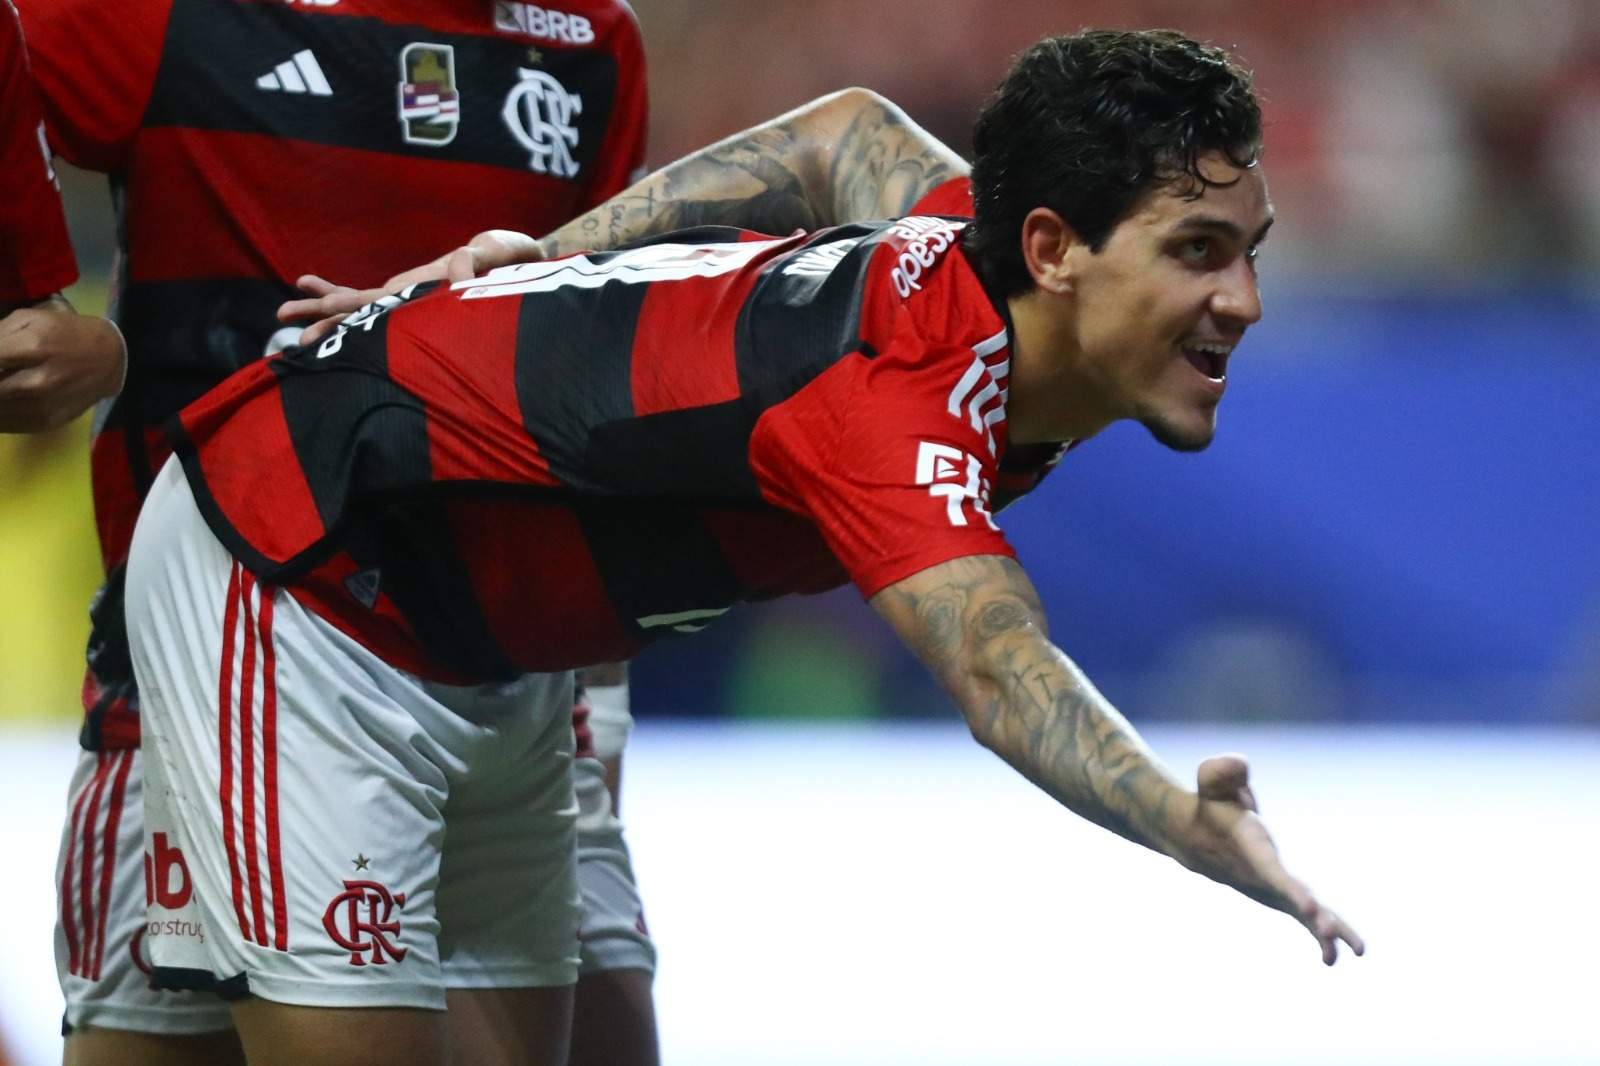 Foto: Marcelo Cortes/Flamengo/Pedro comemora após fazer o segundo gol do Flamengo na goleada sobre o Audax